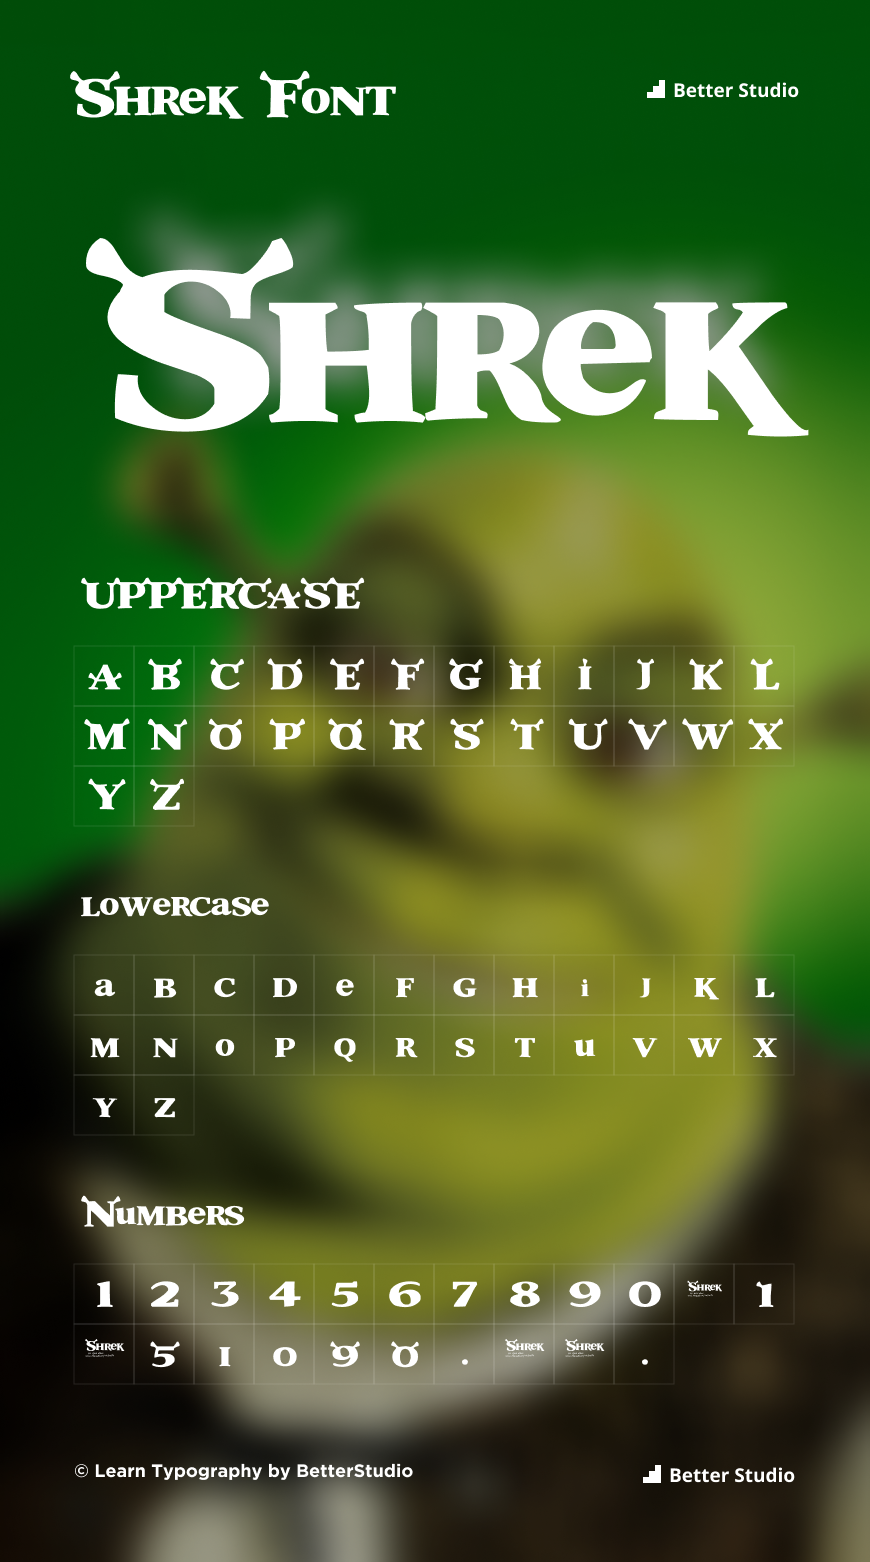 Shrek Font: Download Free Font and Logo